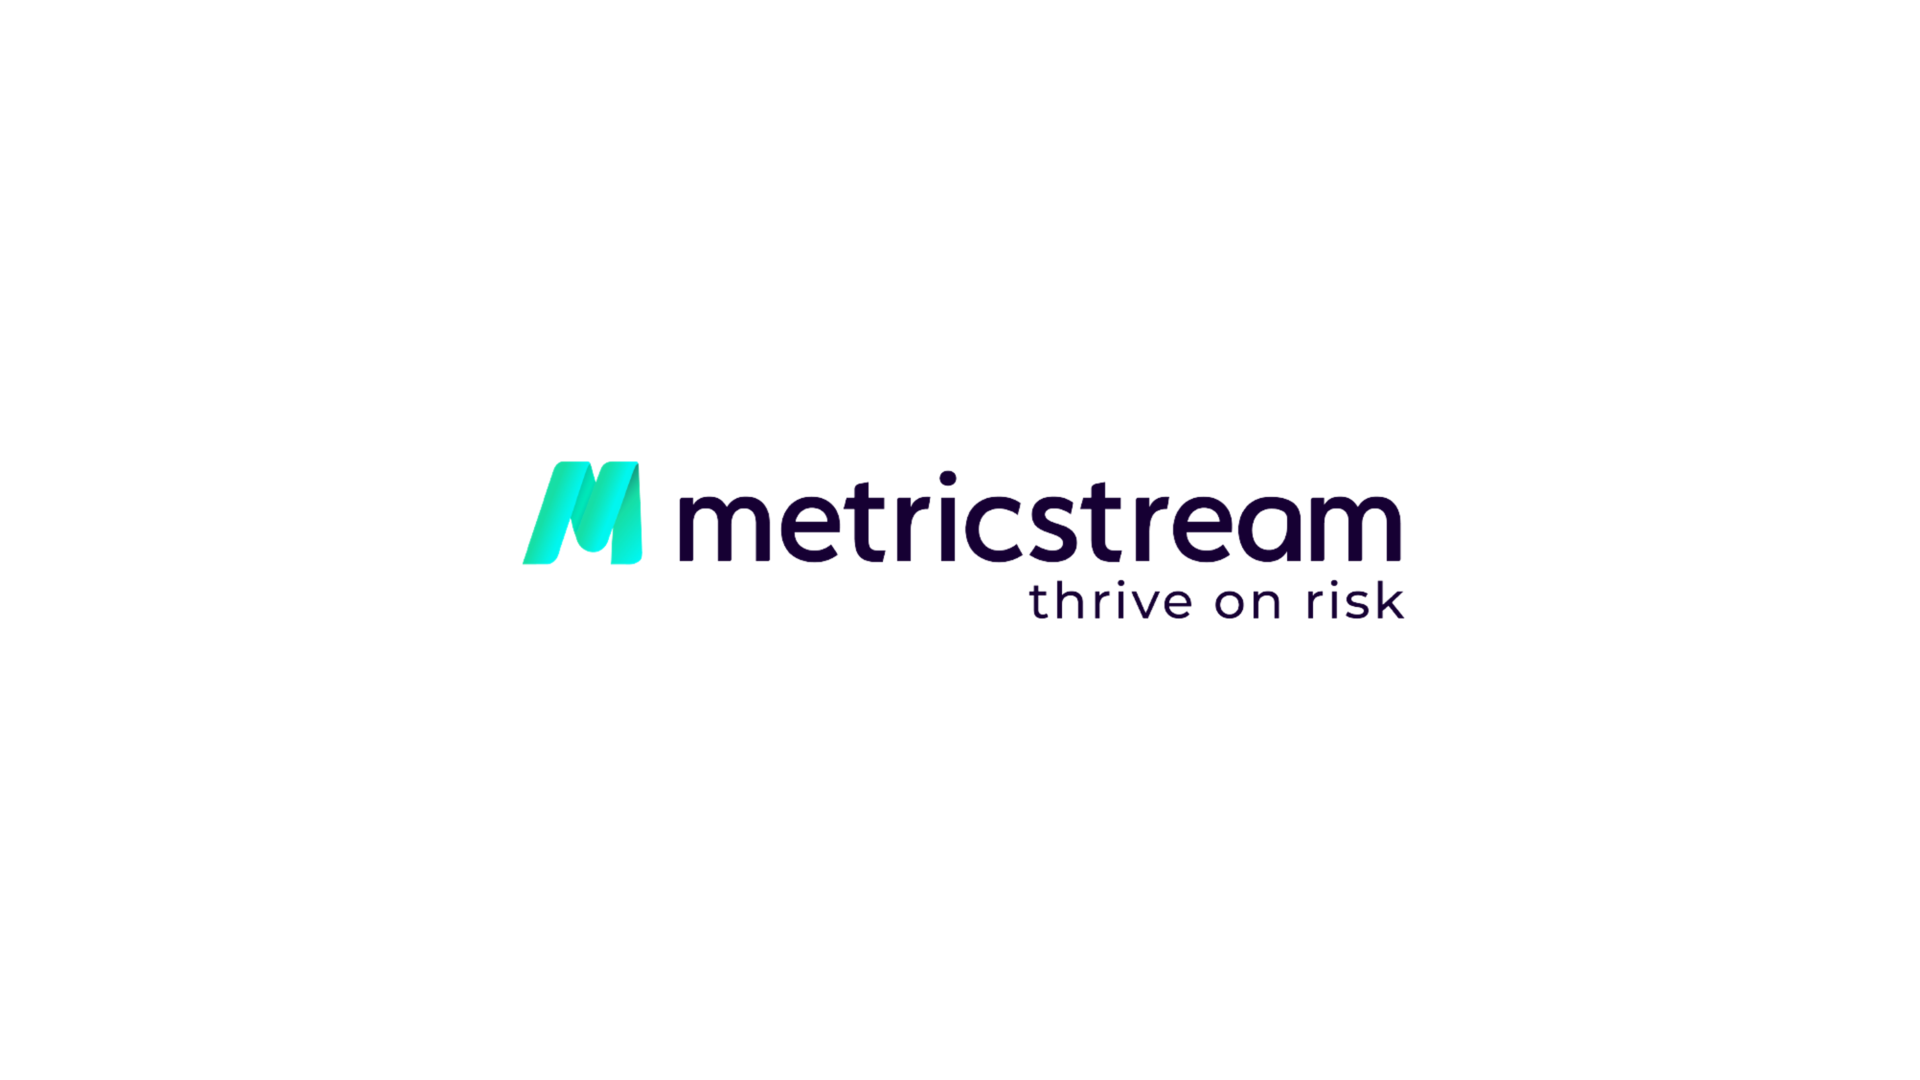 Metricstream